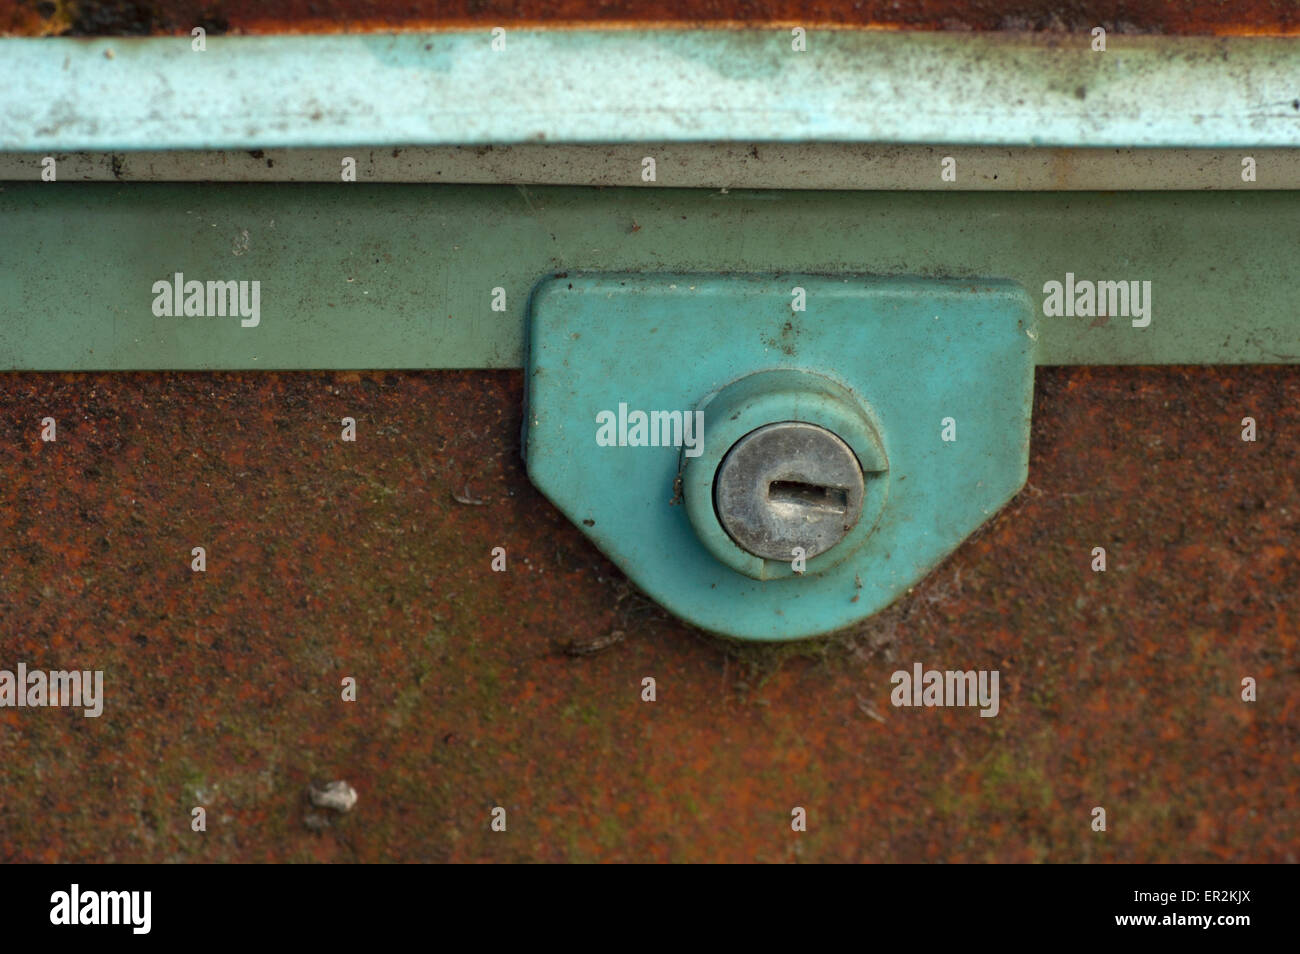 Rusty freezer immagini e fotografie stock ad alta risoluzione - Alamy